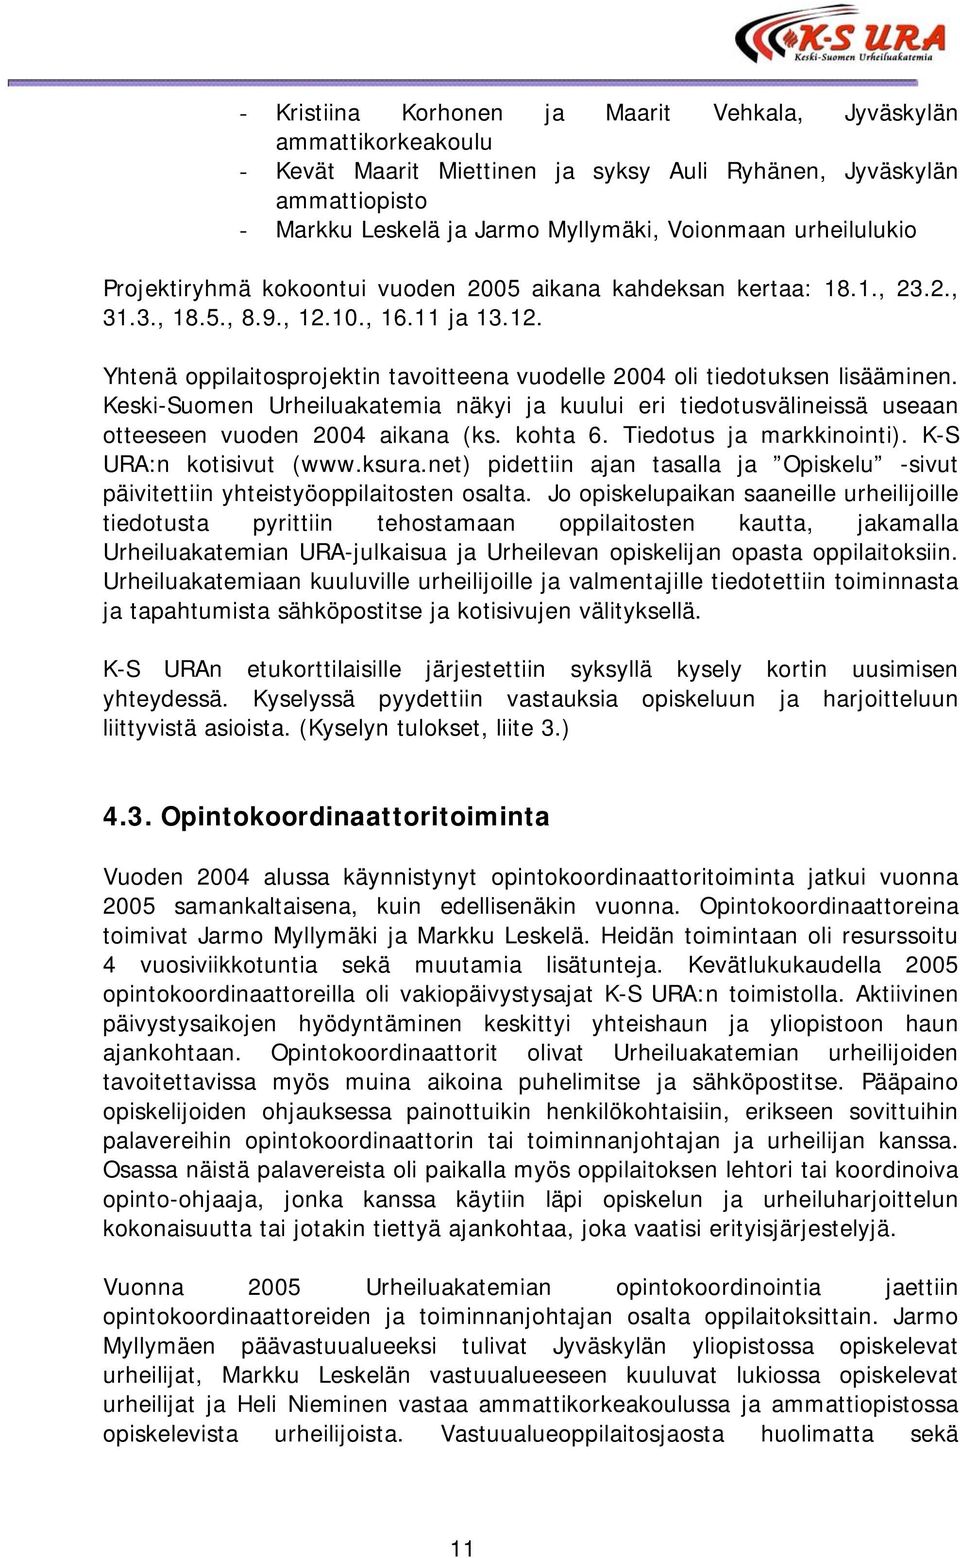 Keski-Suomen Urheiluakatemia näkyi ja kuului eri tiedotusvälineissä useaan otteeseen vuoden 2004 aikana (ks. kohta 6. Tiedotus ja markkinointi). K-S URA:n kotisivut (www.ksura.